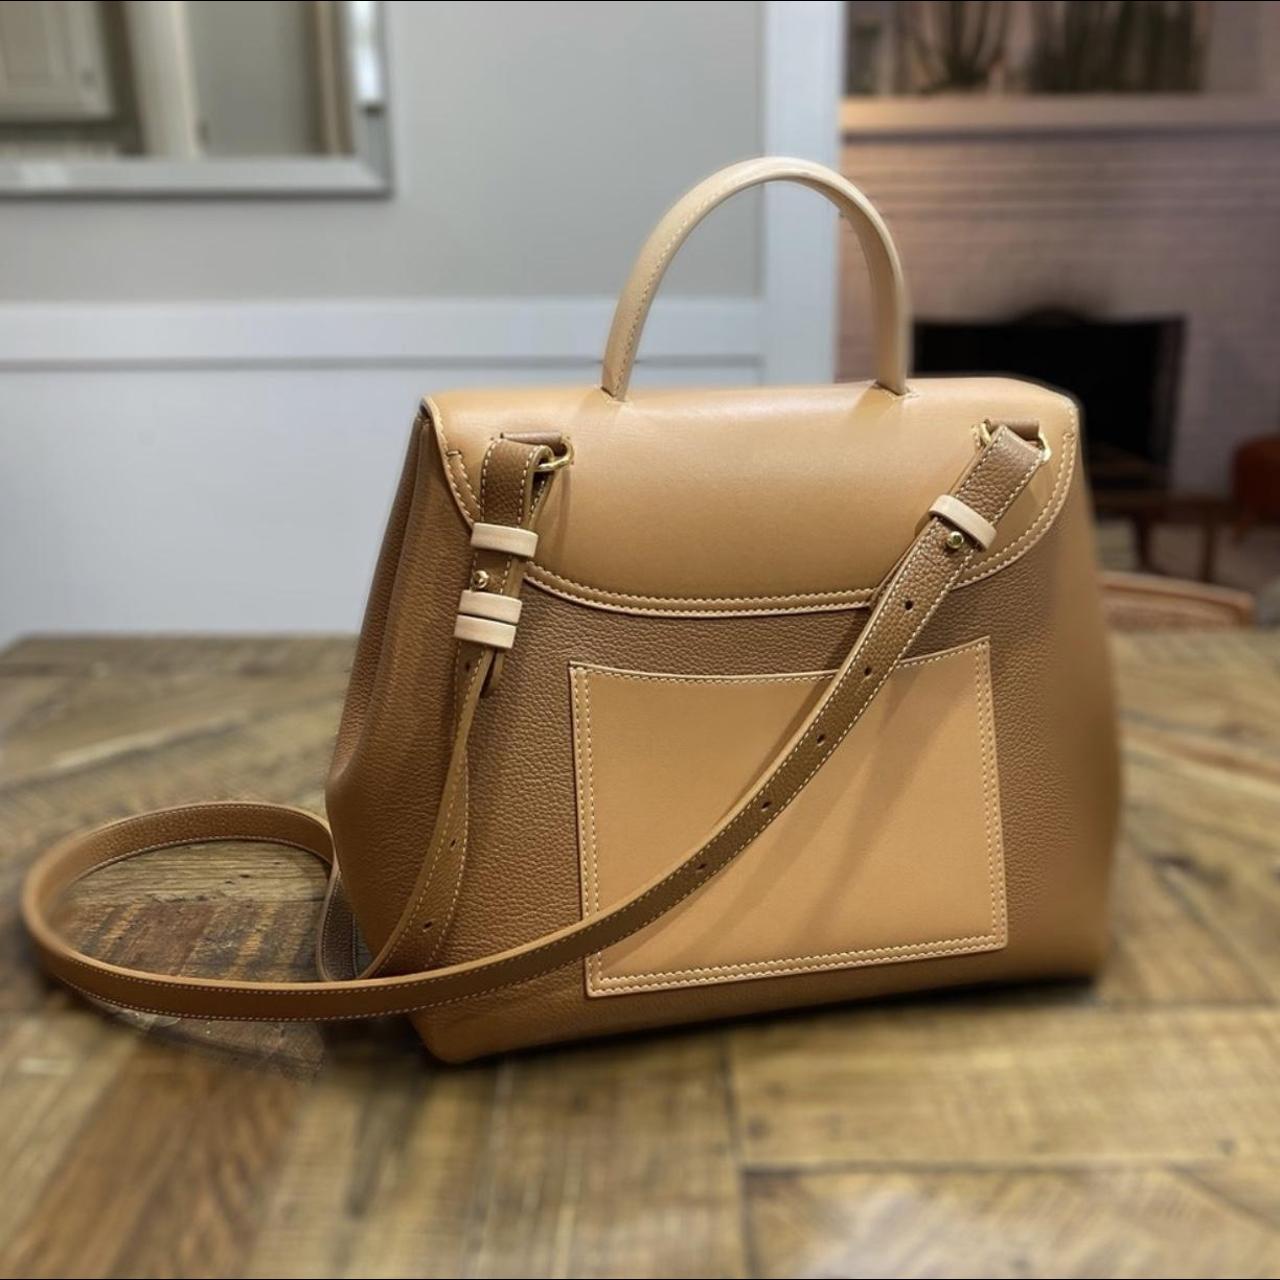 Numéro un leather handbag Polene Beige in Leather - 31443458